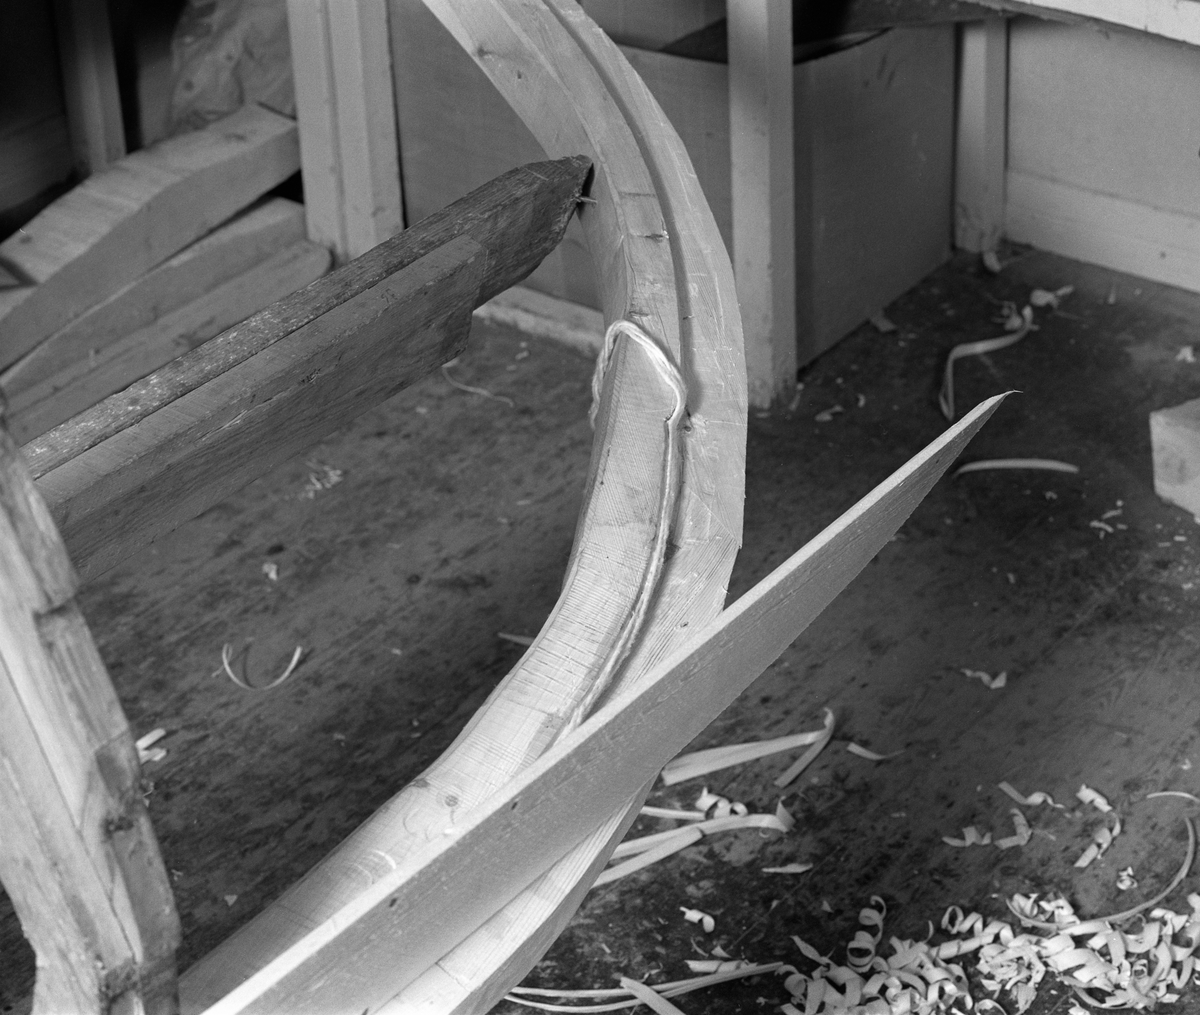 Bygging av fløterbåt i Glomma fellesfløtingsforenings verksted Breidablikk ved kommunesenteret Flisa i Åsnes i november 1984. Båttypen ble for øvrig kalt «Flisabåt», men denne modellen var egentlig utviklet av John Dybendal (1904-1985) omkring 1930. Målet var å kunne levere en robåt som passet i elva Flisa. Dybendal bygde sjøl slike båter fram til 1949. Glomma fellesfløtingsforening hadde vært en viktig kunde hos Dybendal, og da han gav seg som båtbygger ble virksomheten flyttet til denne virksomhetens verksted for Solør-regionen, hvor båtbygging ble vinteraktivitet for et par av karene som hadde vassdraget som arbeidsplass sommerstid. Det var maler til alle båtdeler, og skroget ble bygd på tverrmaler som ble festet til kjølen. Dette var hjelpemidler som gjorde det mulig for fløtere med reletivt liten håndverkserfaring å bygge denne båttrypen og oppnå den standardiserte formen som fløterkameratene var vant med. De fleste flisabåtene fikk jernspanter, for det var krevende å finne de krokvokste emnene som gav de beste spantene. Ettersom Norsk Skogbruksmuseum dokumenterte båtbygginga ville karene likevel bruke trespanter. Dette fotografiet viser hvordan Lars Bernhard Olastuen (1927-1998) la bomullstråd som skulle fungere som pakning i sammenfløyninga mellom kjølen og førstebordet. Flisabåtene ble, som dette bildet viser, bygd løst. Kjølen var ikke fastspent i verkstedet, og den utferdige båten kunne dermed vippes fra side til side slik det passet under ulike faser i arbeidet.

Båten som var under bygging da dette fotografiet ble tatt ble seinere overlatt til Norsk Skogbruksmuseum, der den fikk nummer SJF.07823 i gjenstandssamlinga. Den er 518 centimeter lang og 153 centimeter bred. Odd Jensen har seinere lagd oppmålingstegninger, som også finnes i museets arkiv.